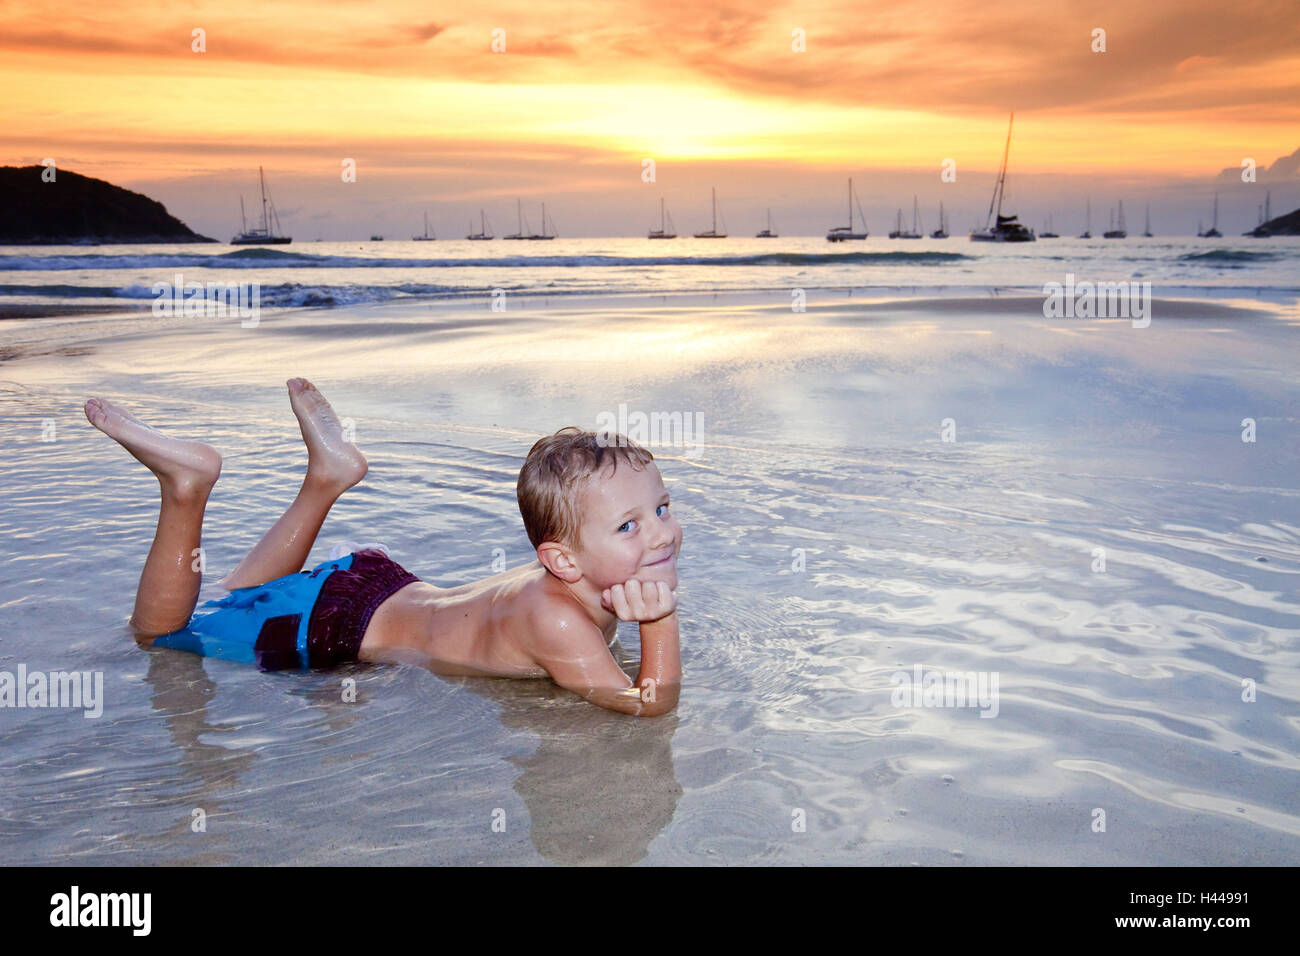 L'île de Thaïlande, Phuket, Nai Harn Beach, garçon, de l'eau, faible profondeur, mensonge, le coucher du soleil, Banque D'Images